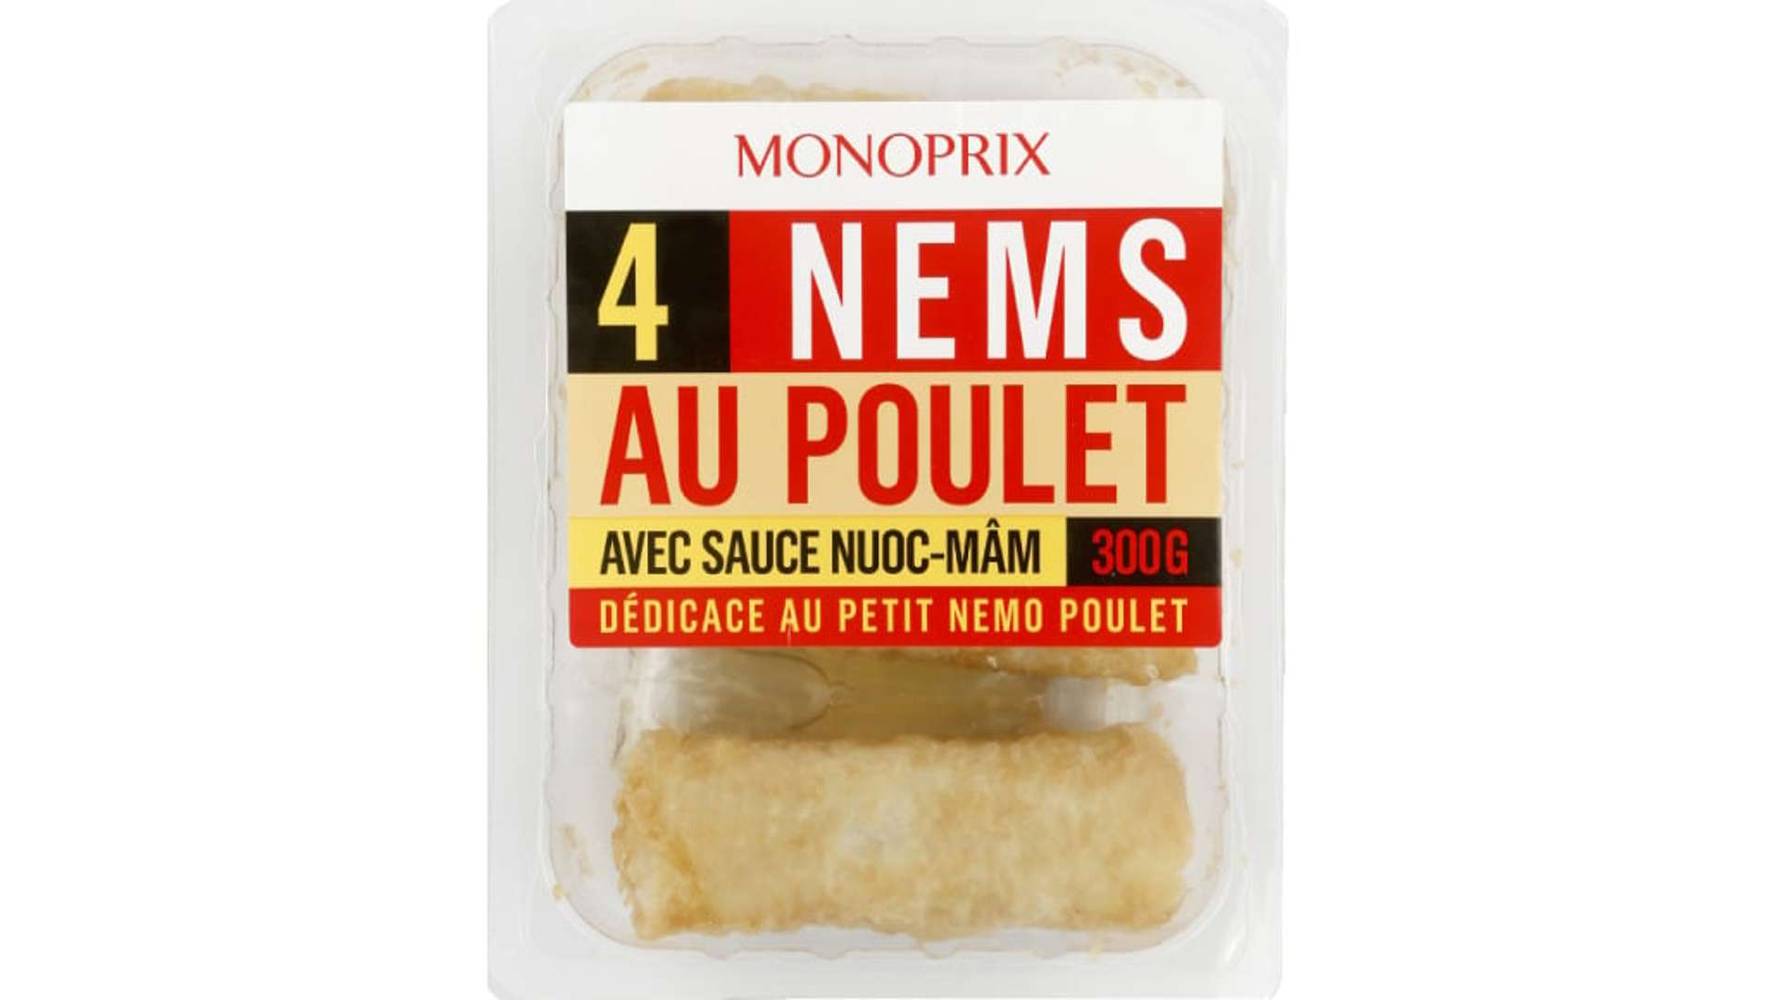 Monoprix - Nems au poulet avec sauce nuoc-mâm